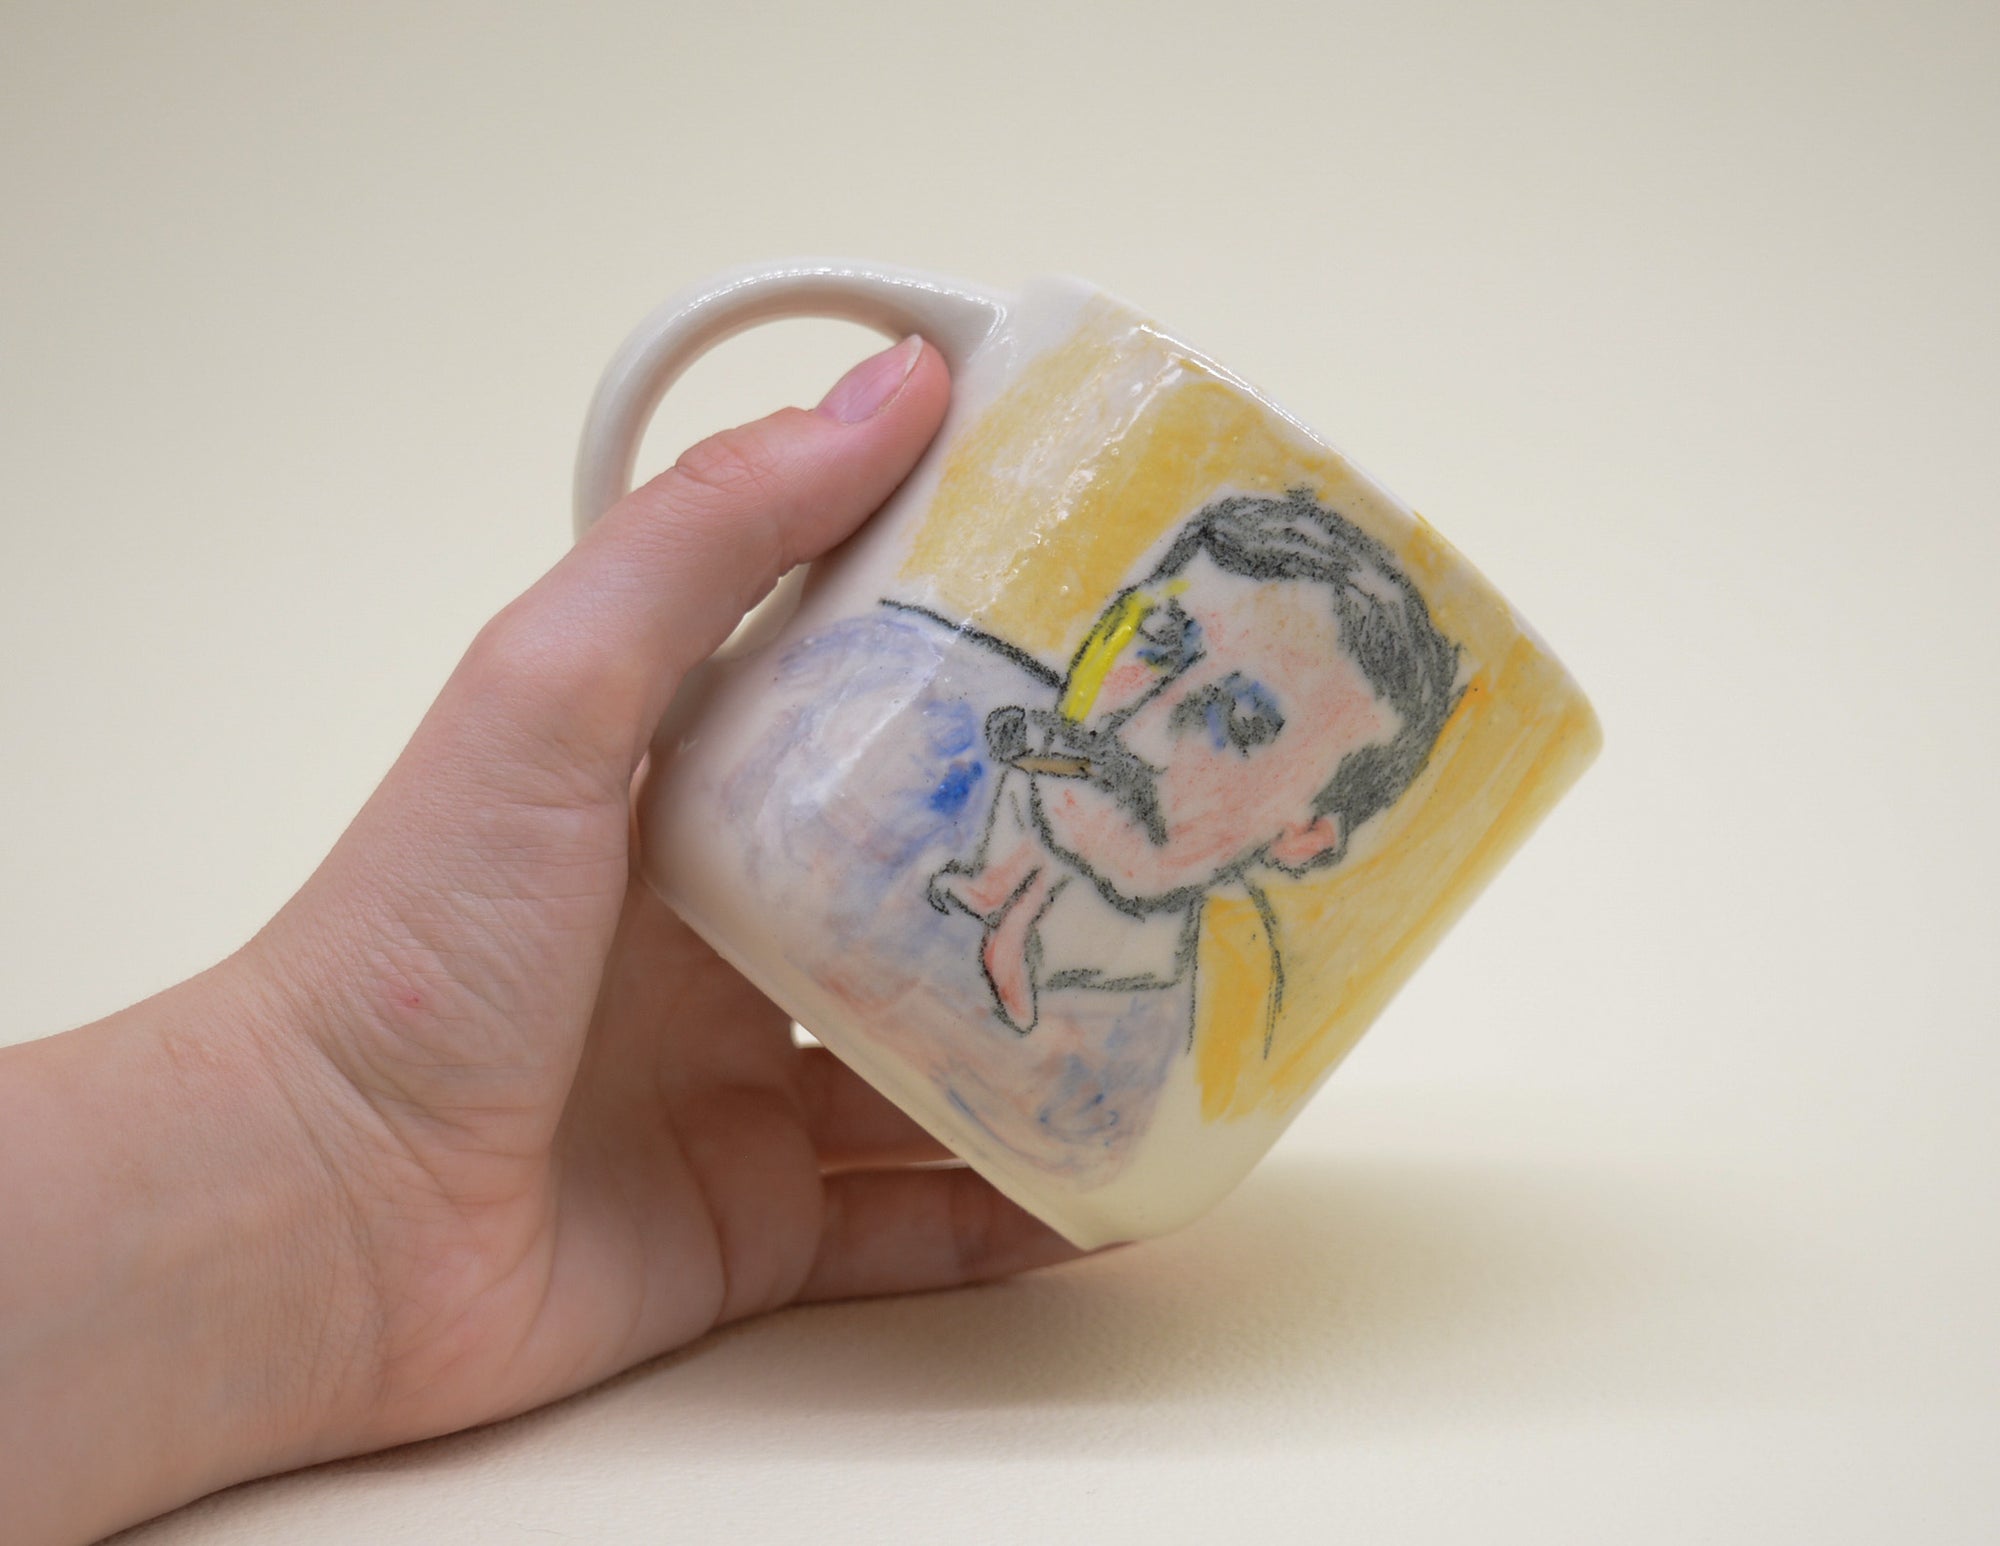 Portrait of a Painter Mug